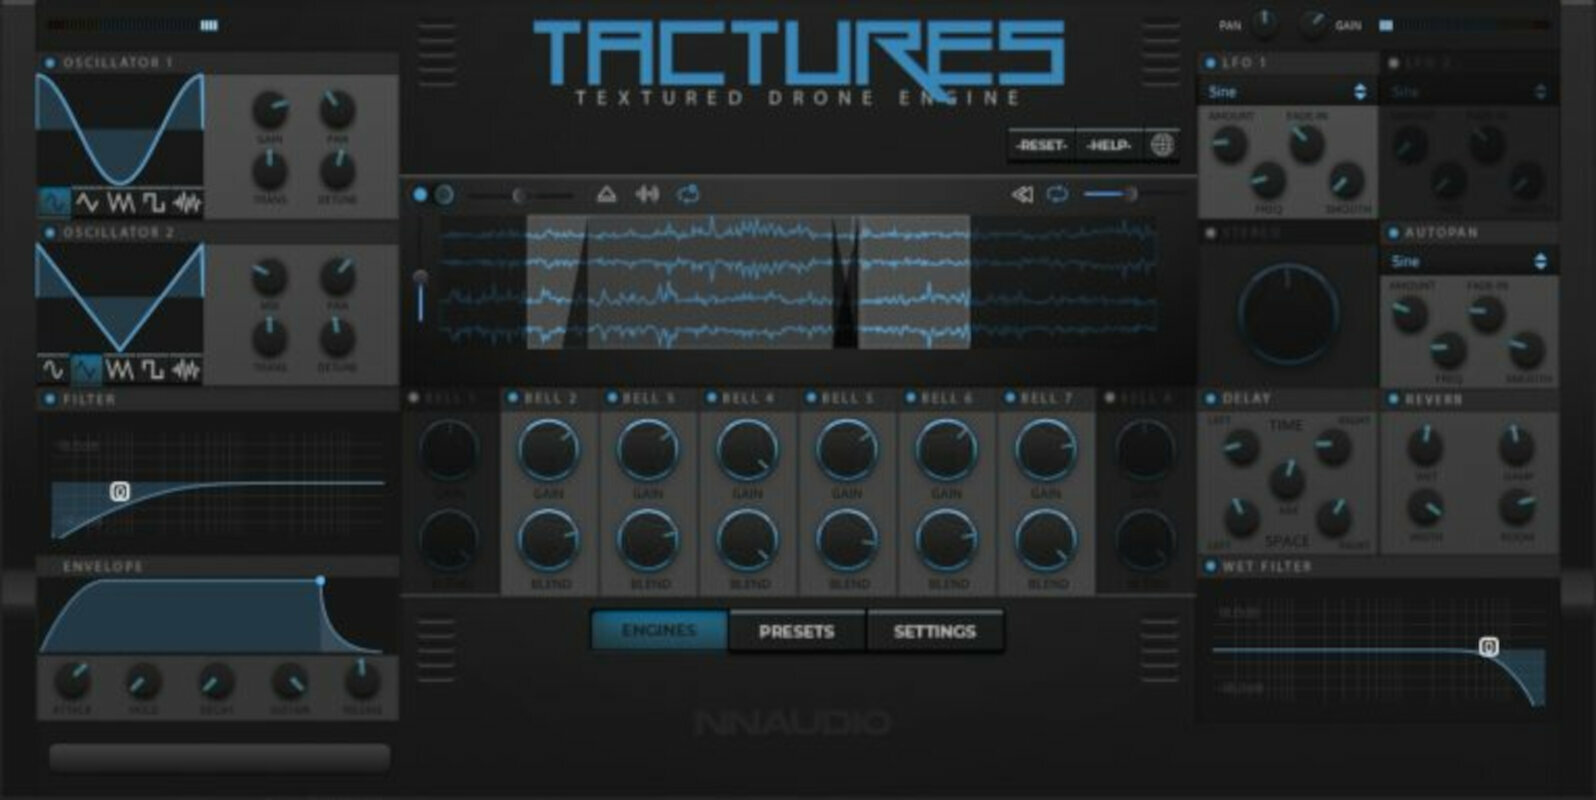 Logiciel de studio Plugins d'effets New Nation Tactures - Textured Drone Engine (Produit numérique)